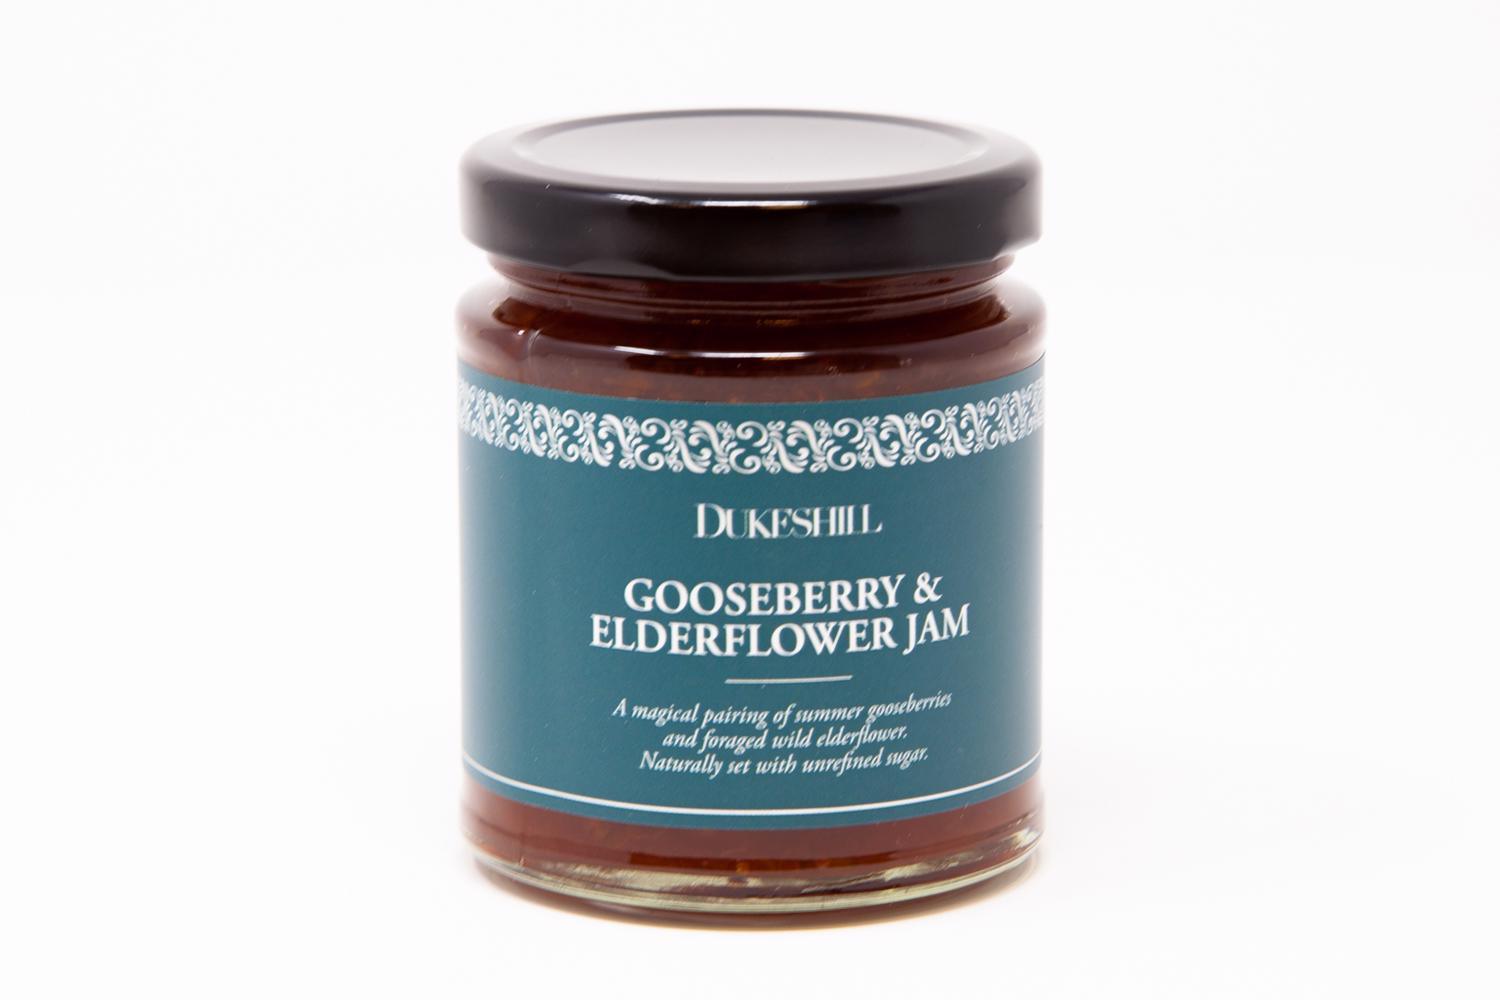 Gooseberry & Elderflower Jam - DukesHill